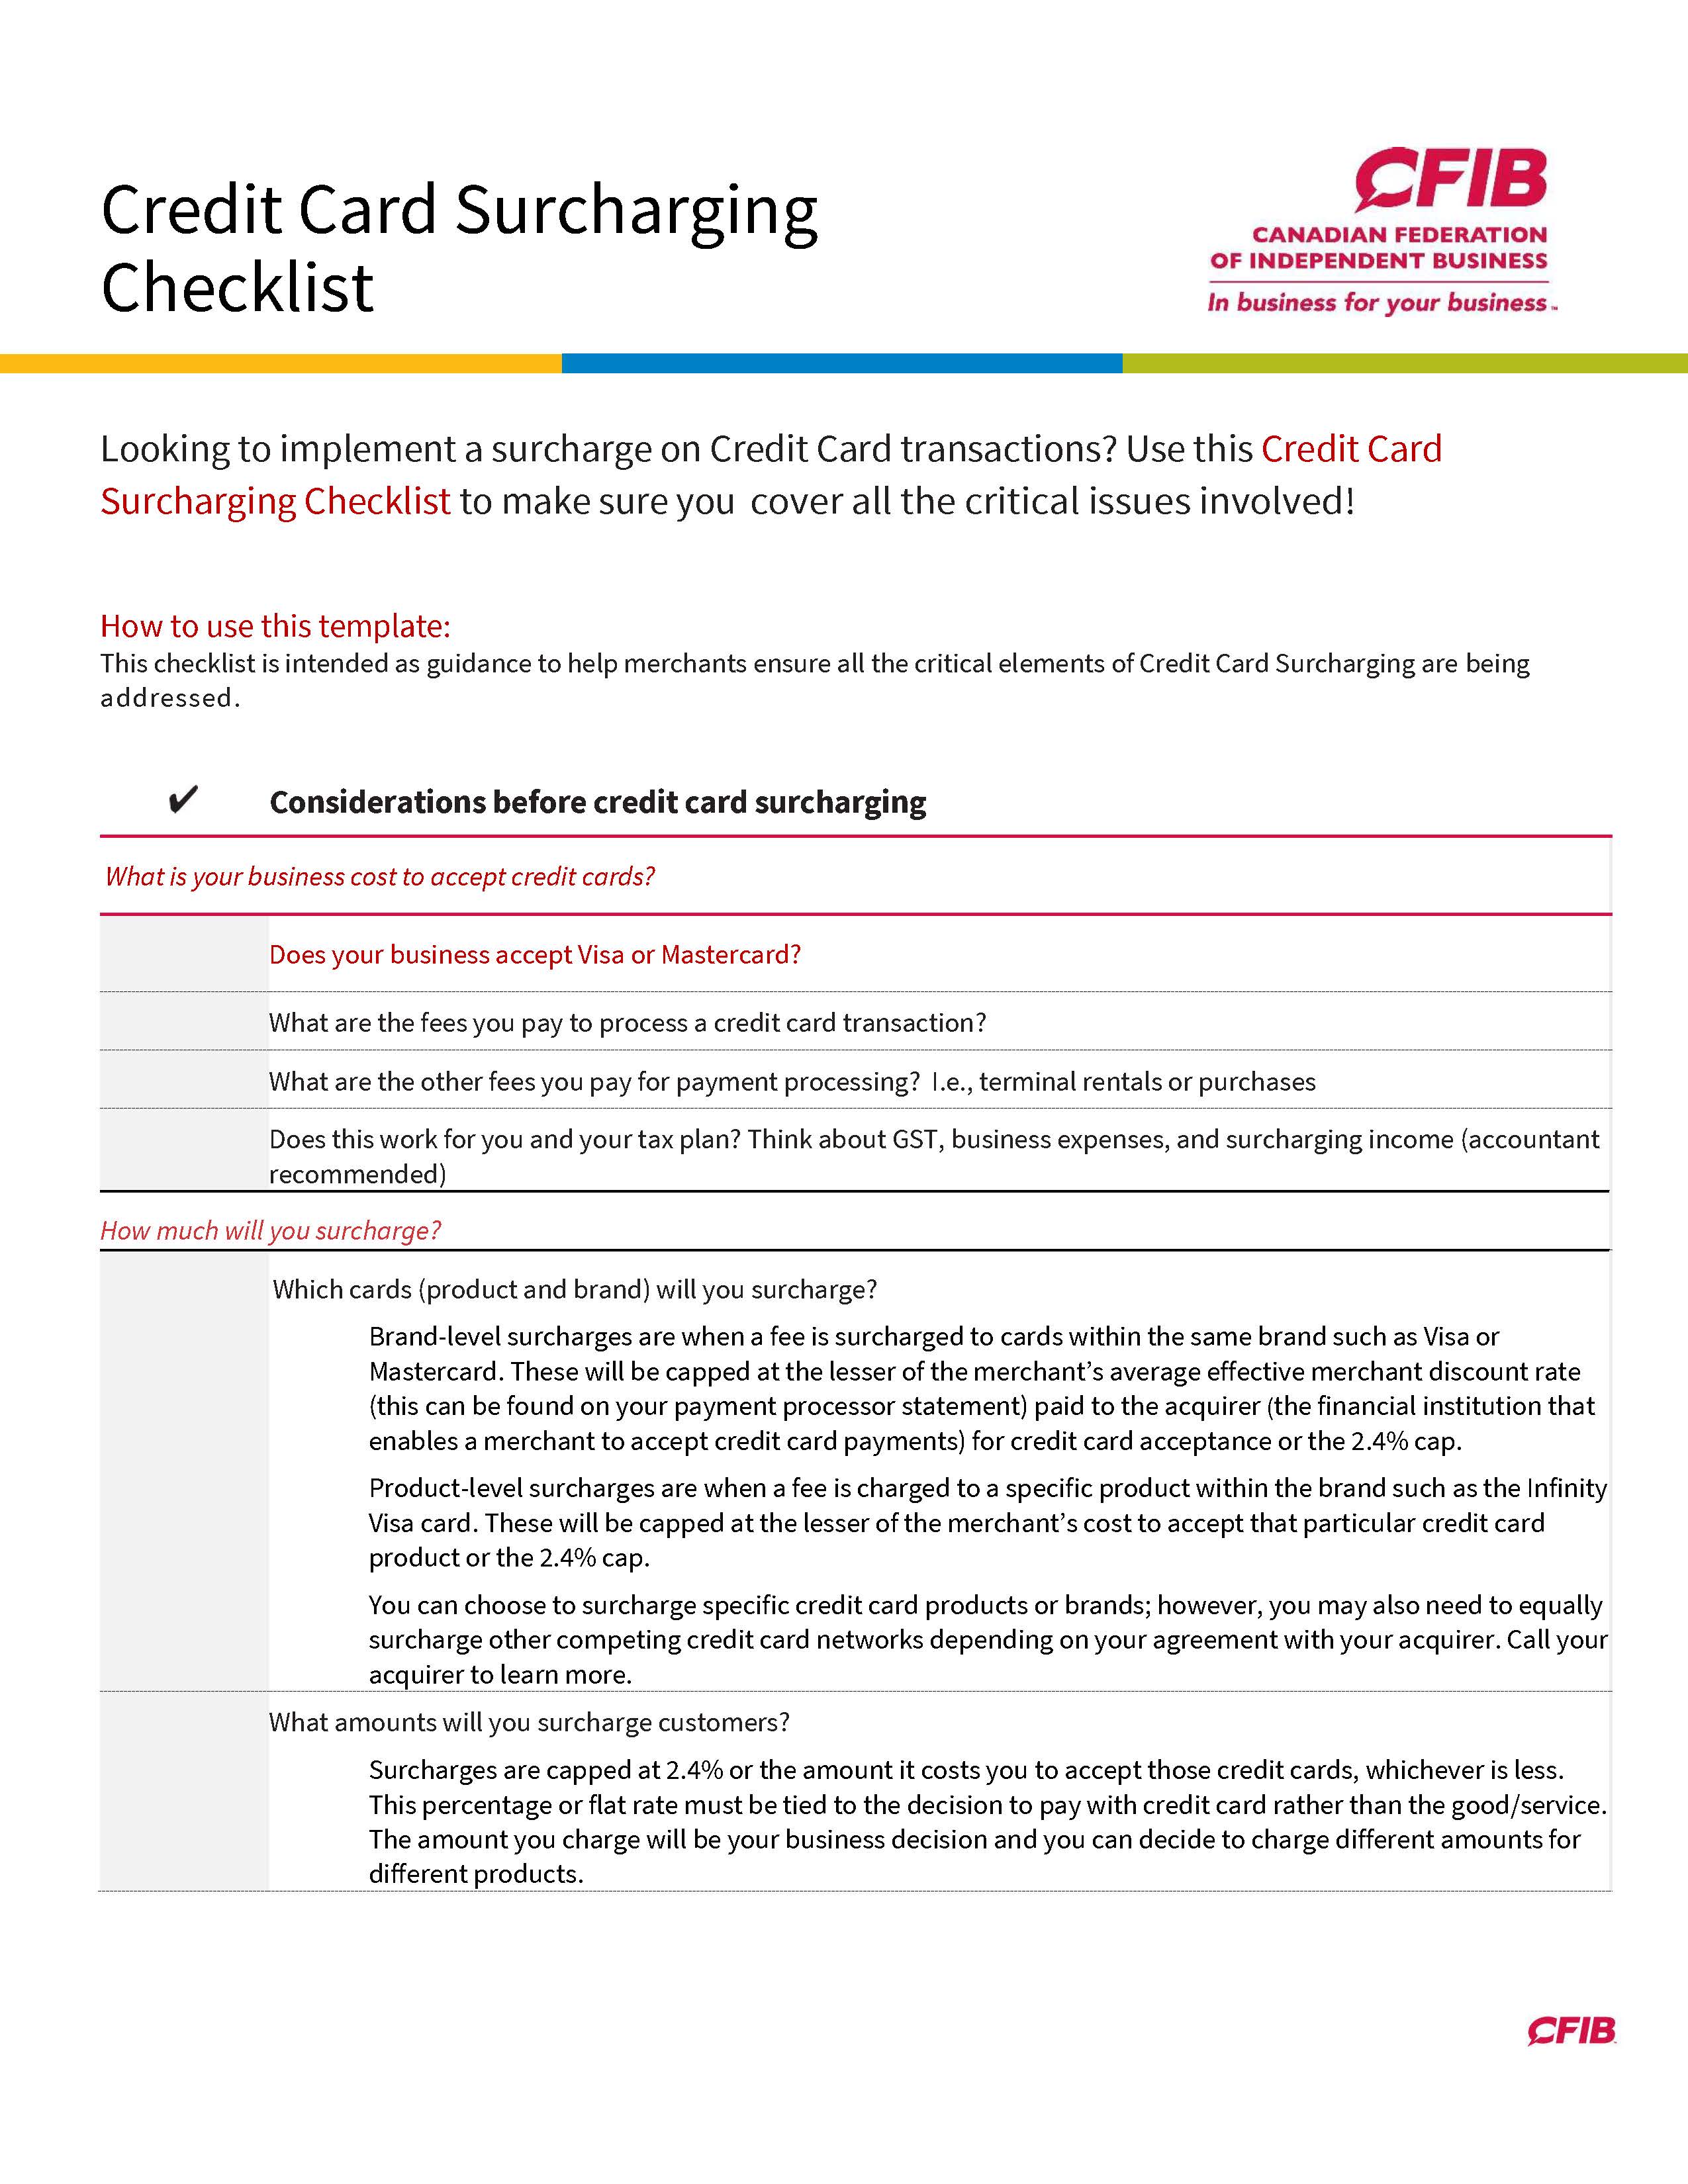 CC_Surcharging_Checklist